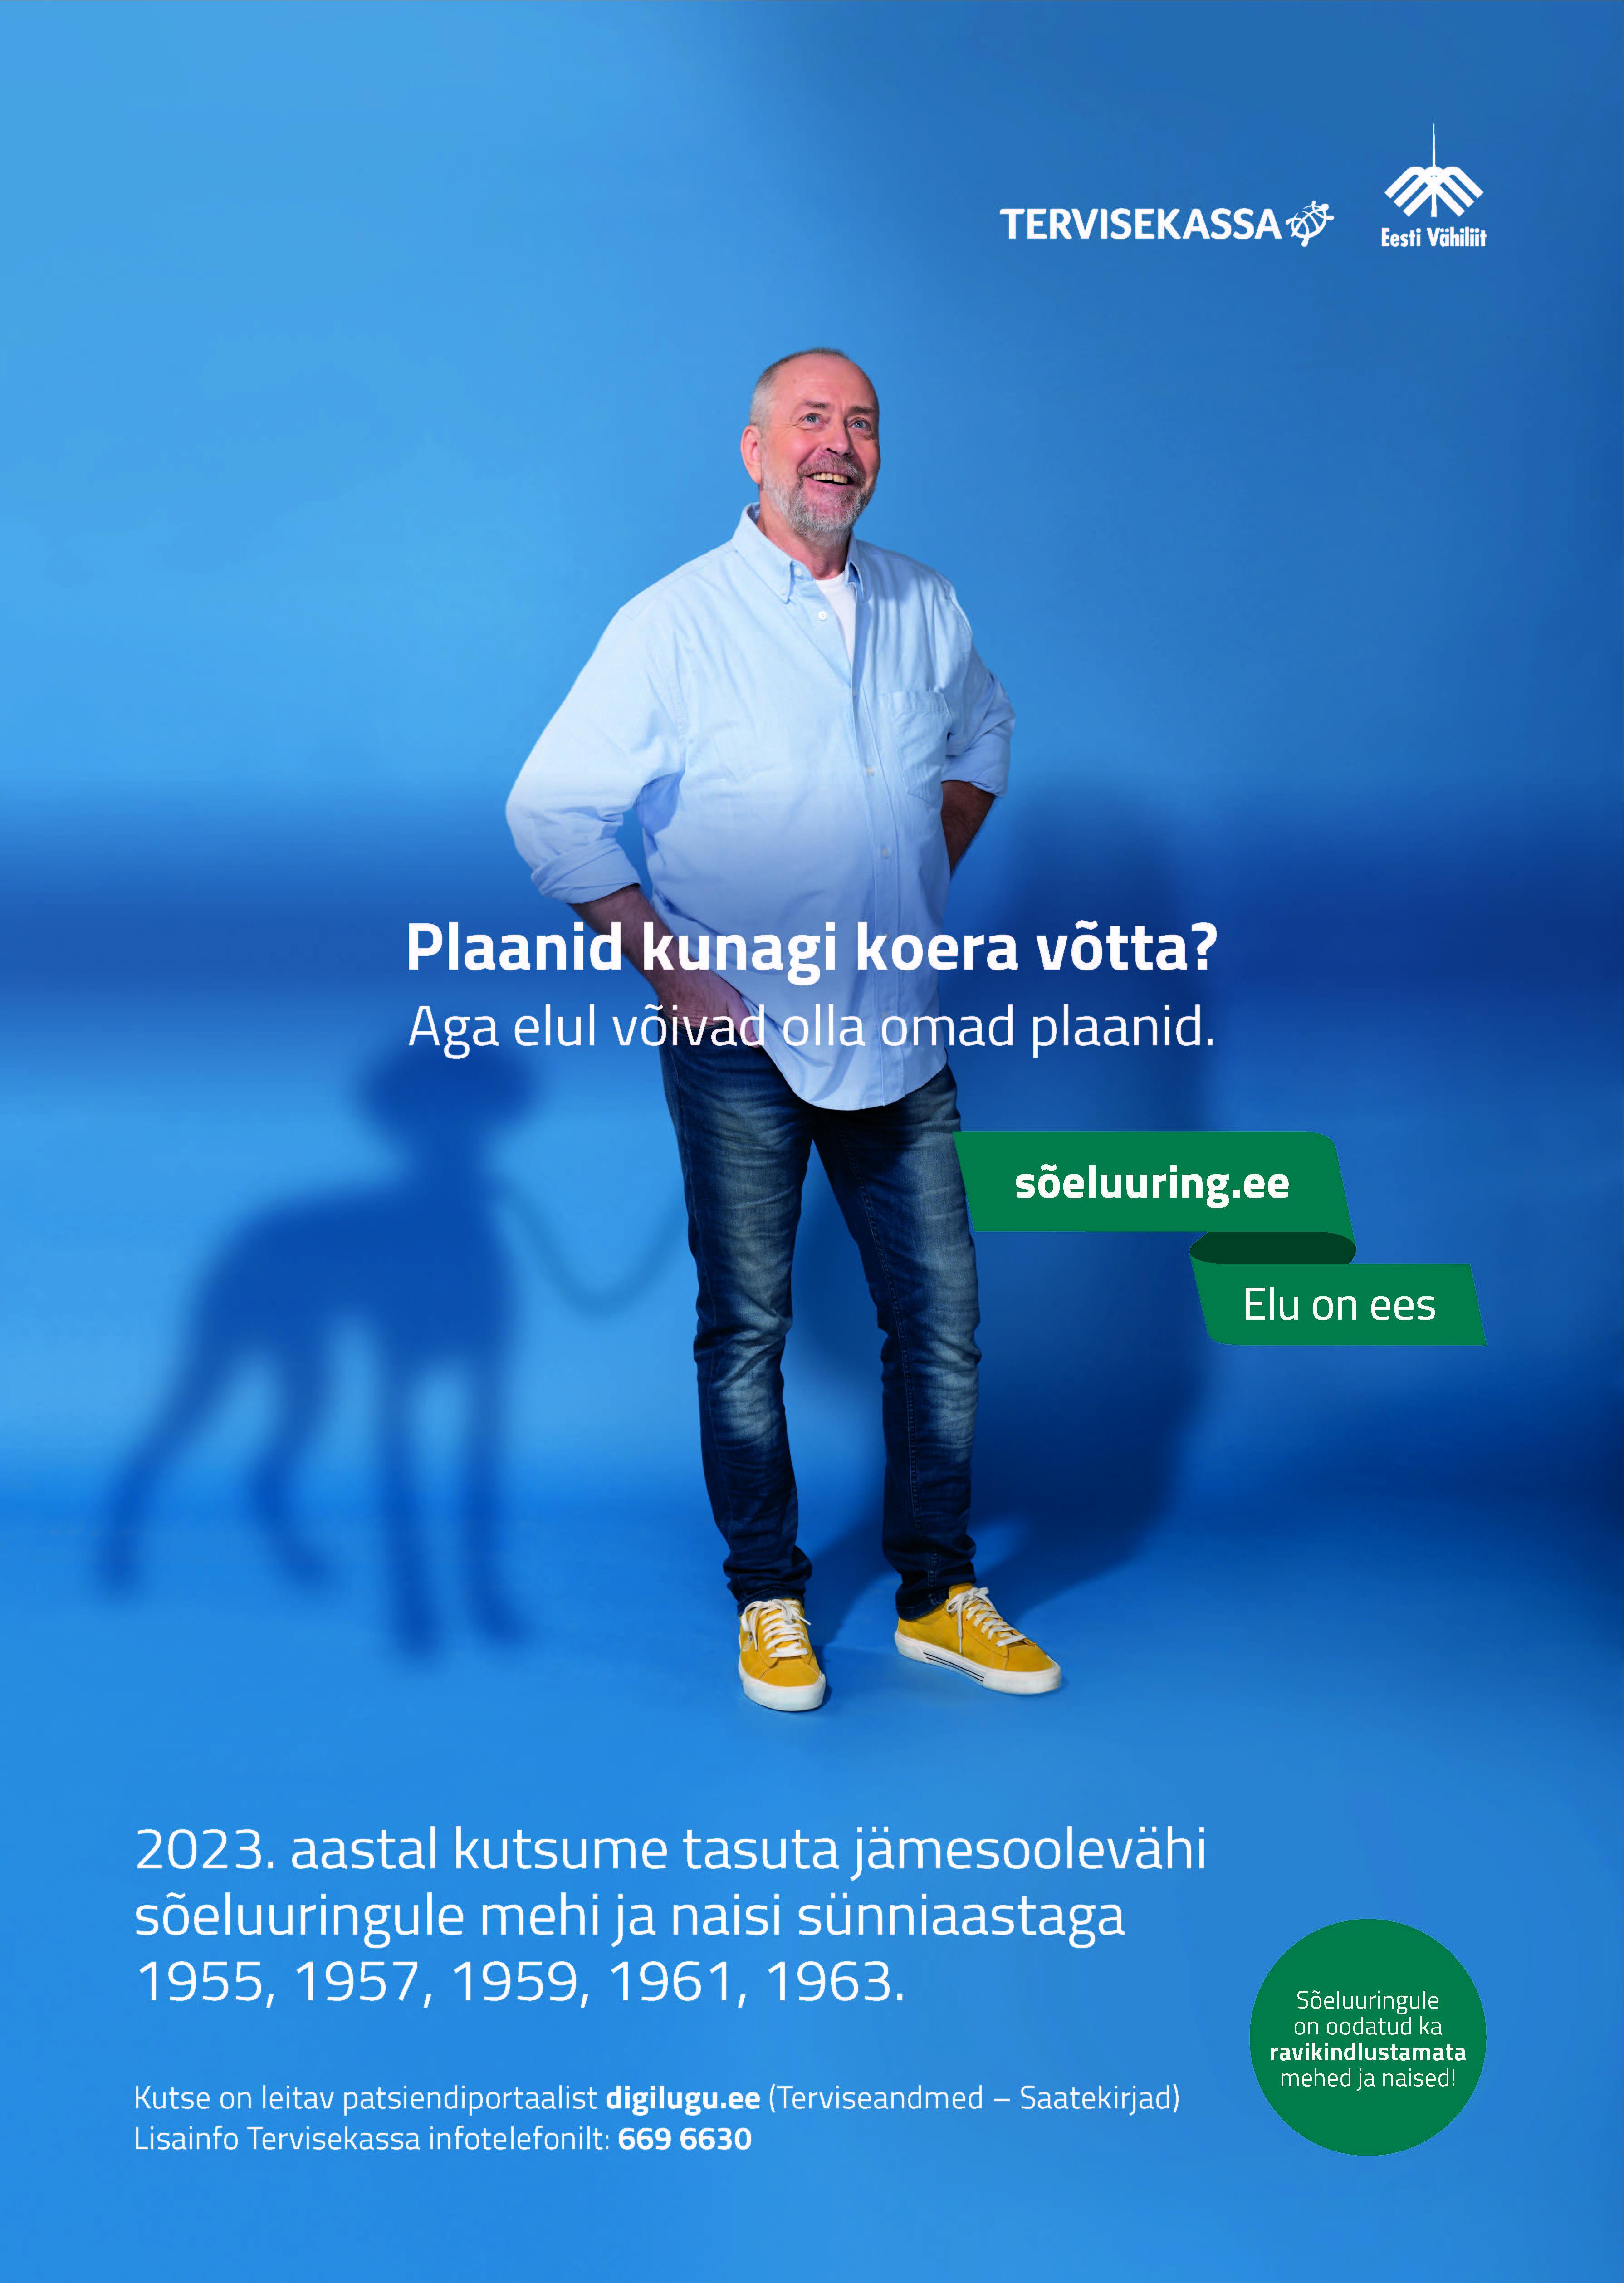 Jämesoolevähi sõeluuringu kampaania 2-20.09.2023